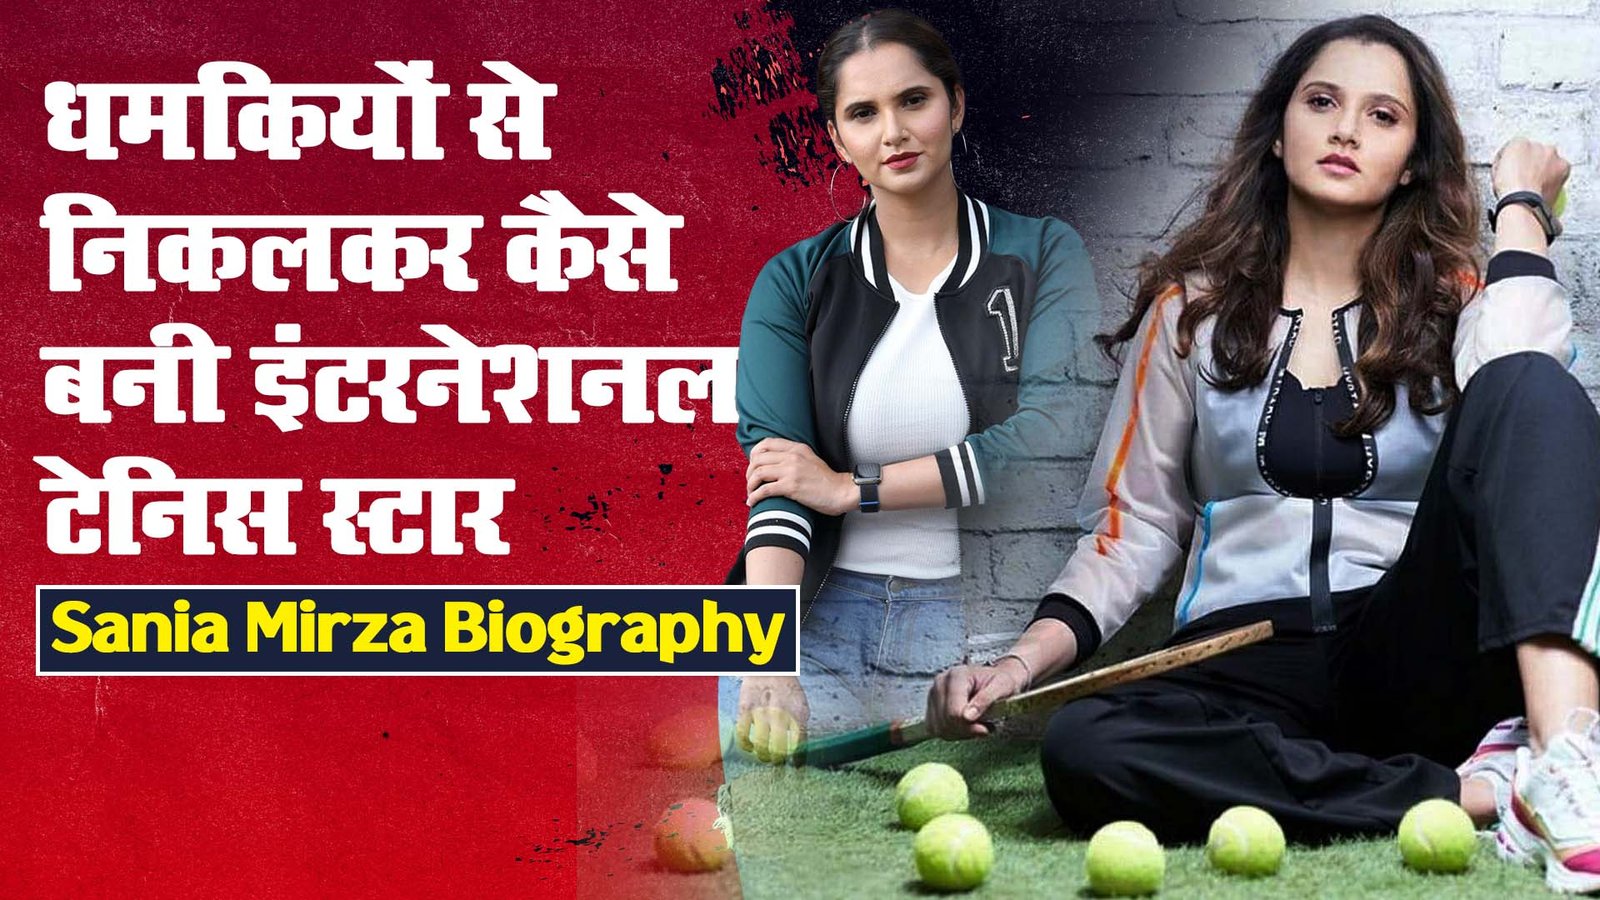 Sania Mirza Biography and Success Story in Hindi